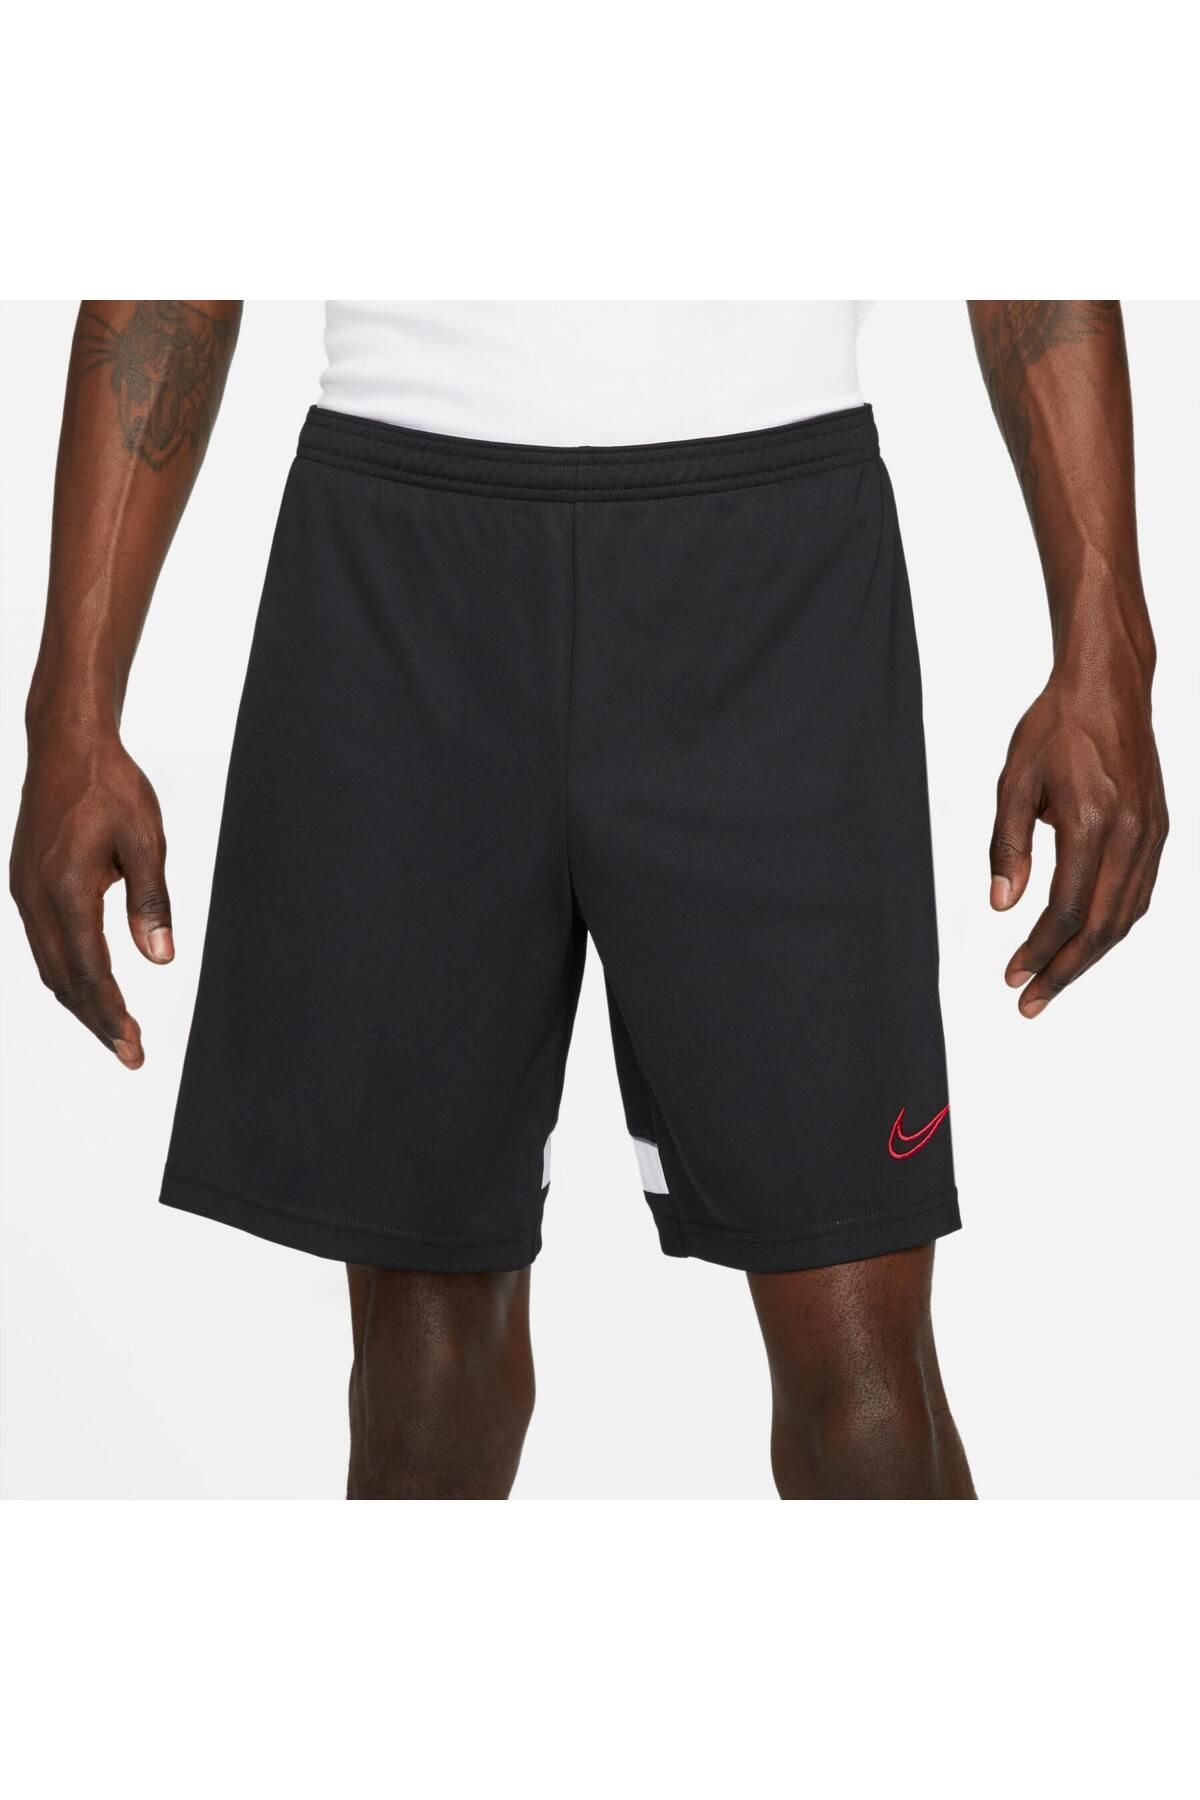 Nike dri fit erkek siyah spor şort cw6107